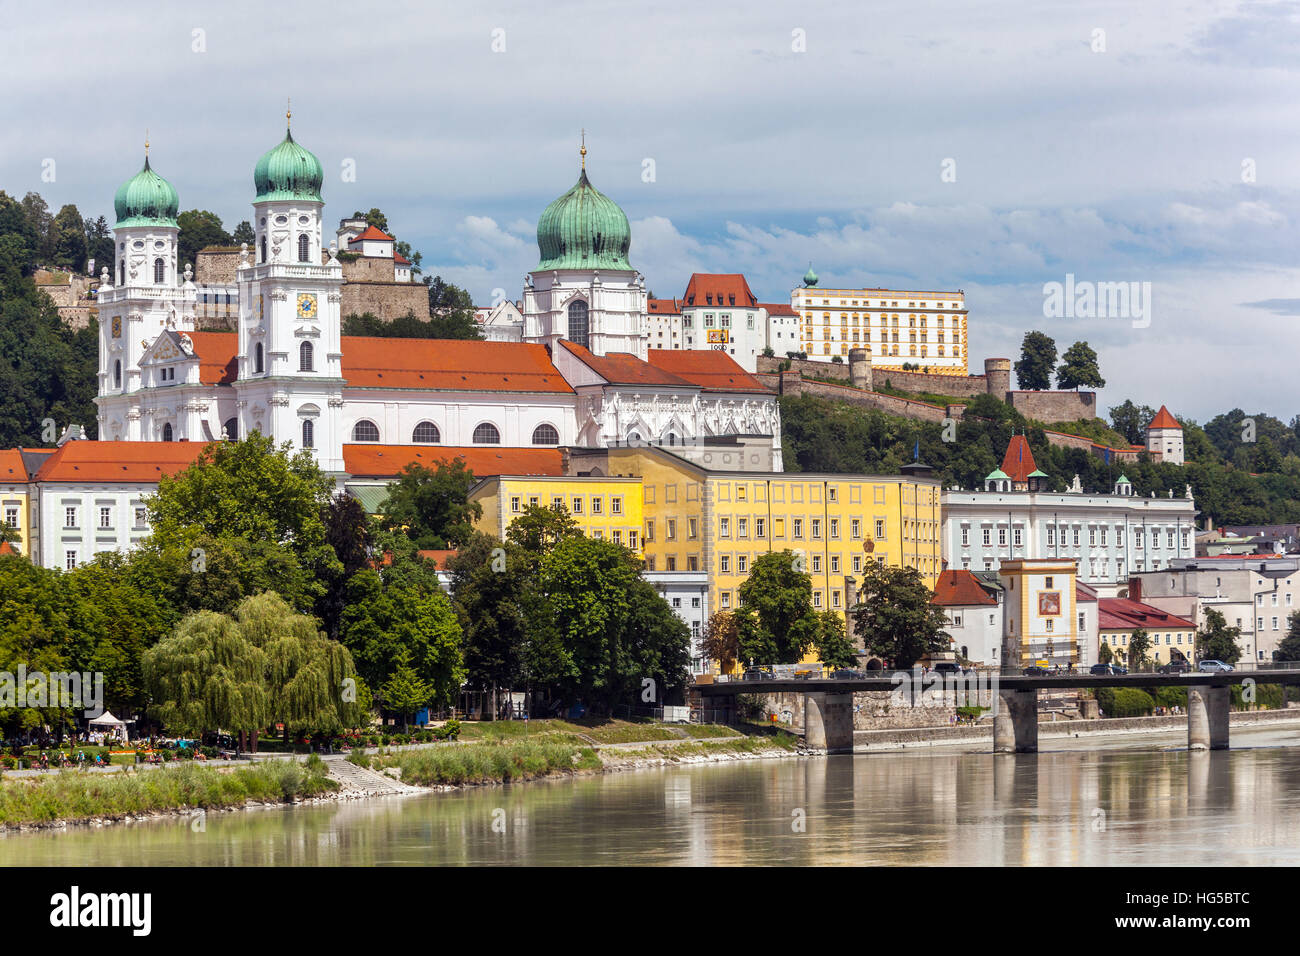 Passau vue sur River Inn, la cathédrale Saint-Étienne, Passau, Bavière, Allemagne, Europe Banque D'Images